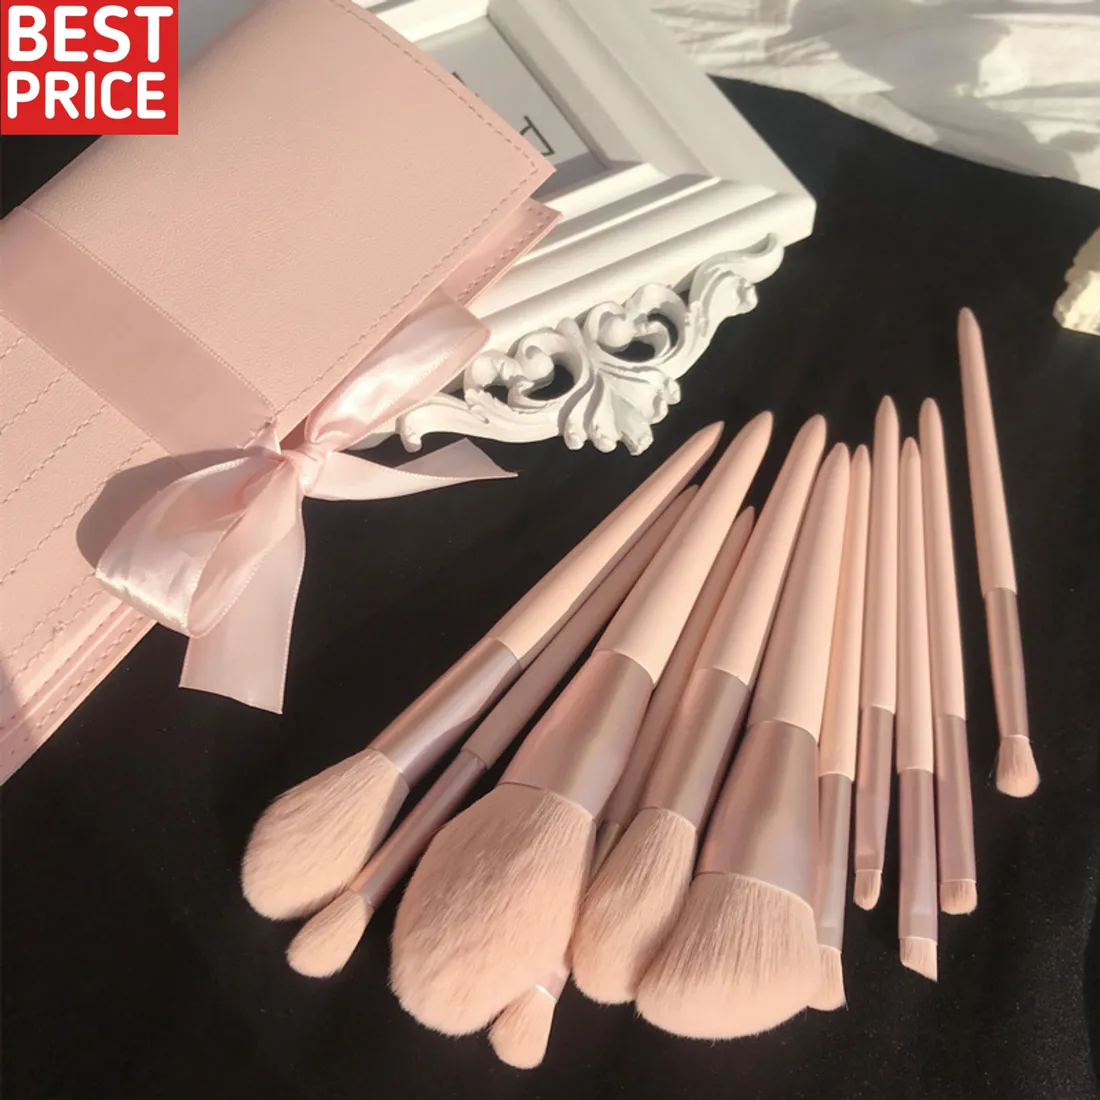 Set di pennelli per trucco 11 pezzi pennello cosmetico Premium per fondotinta Blush correttore ombretto sopracciglio evidenzia pennello per trucco rosa